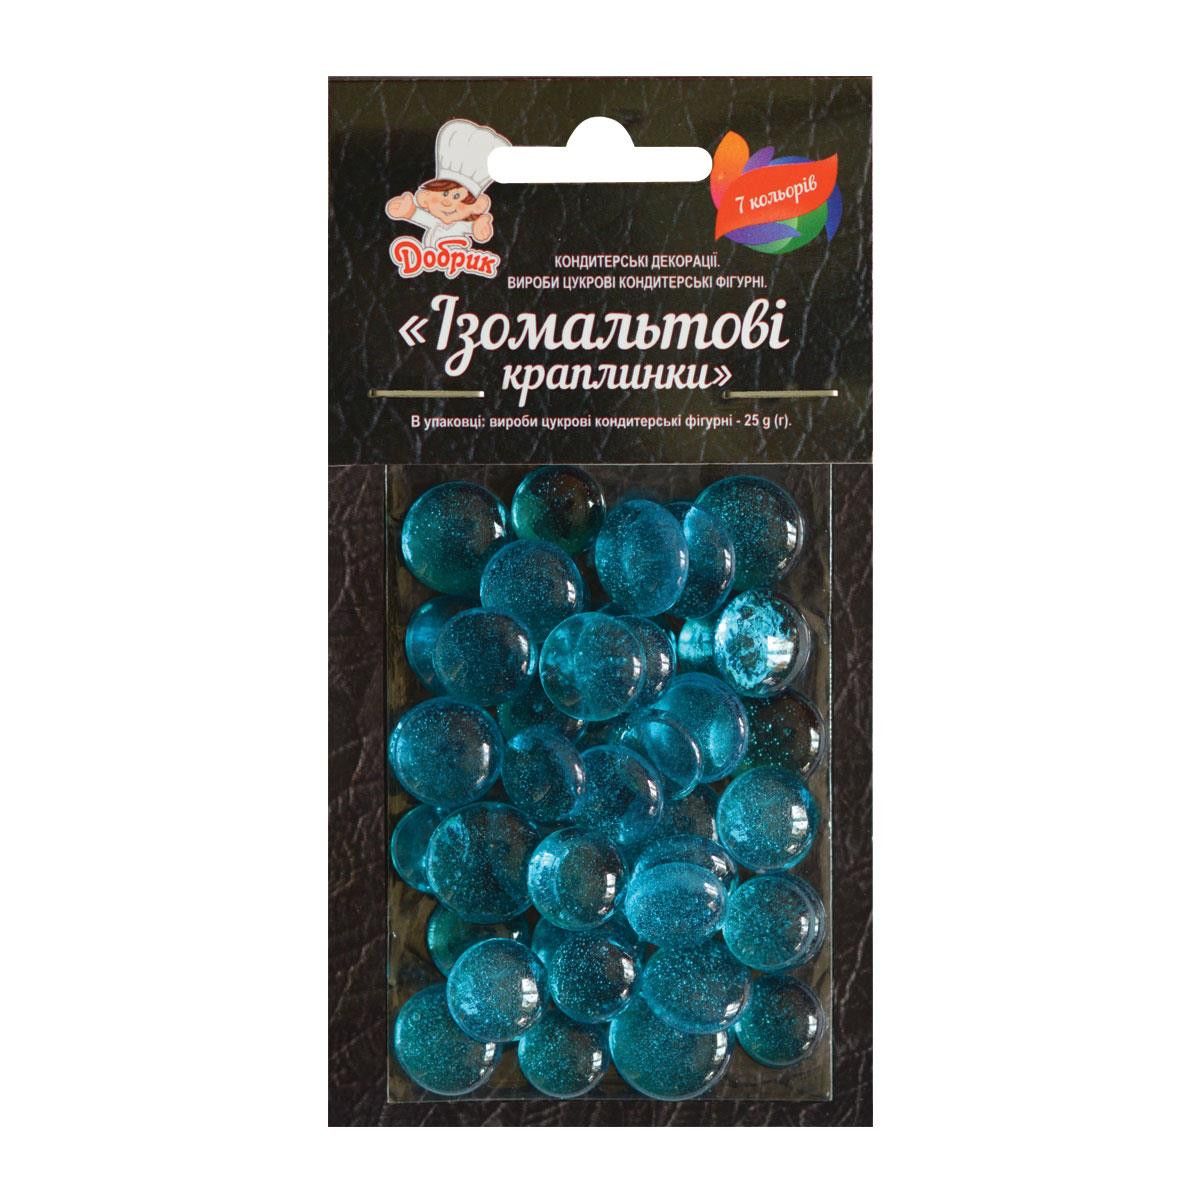 ⋗ Изомальтовые капли голубые купить в Украине ➛ CakeShop.com.ua, фото